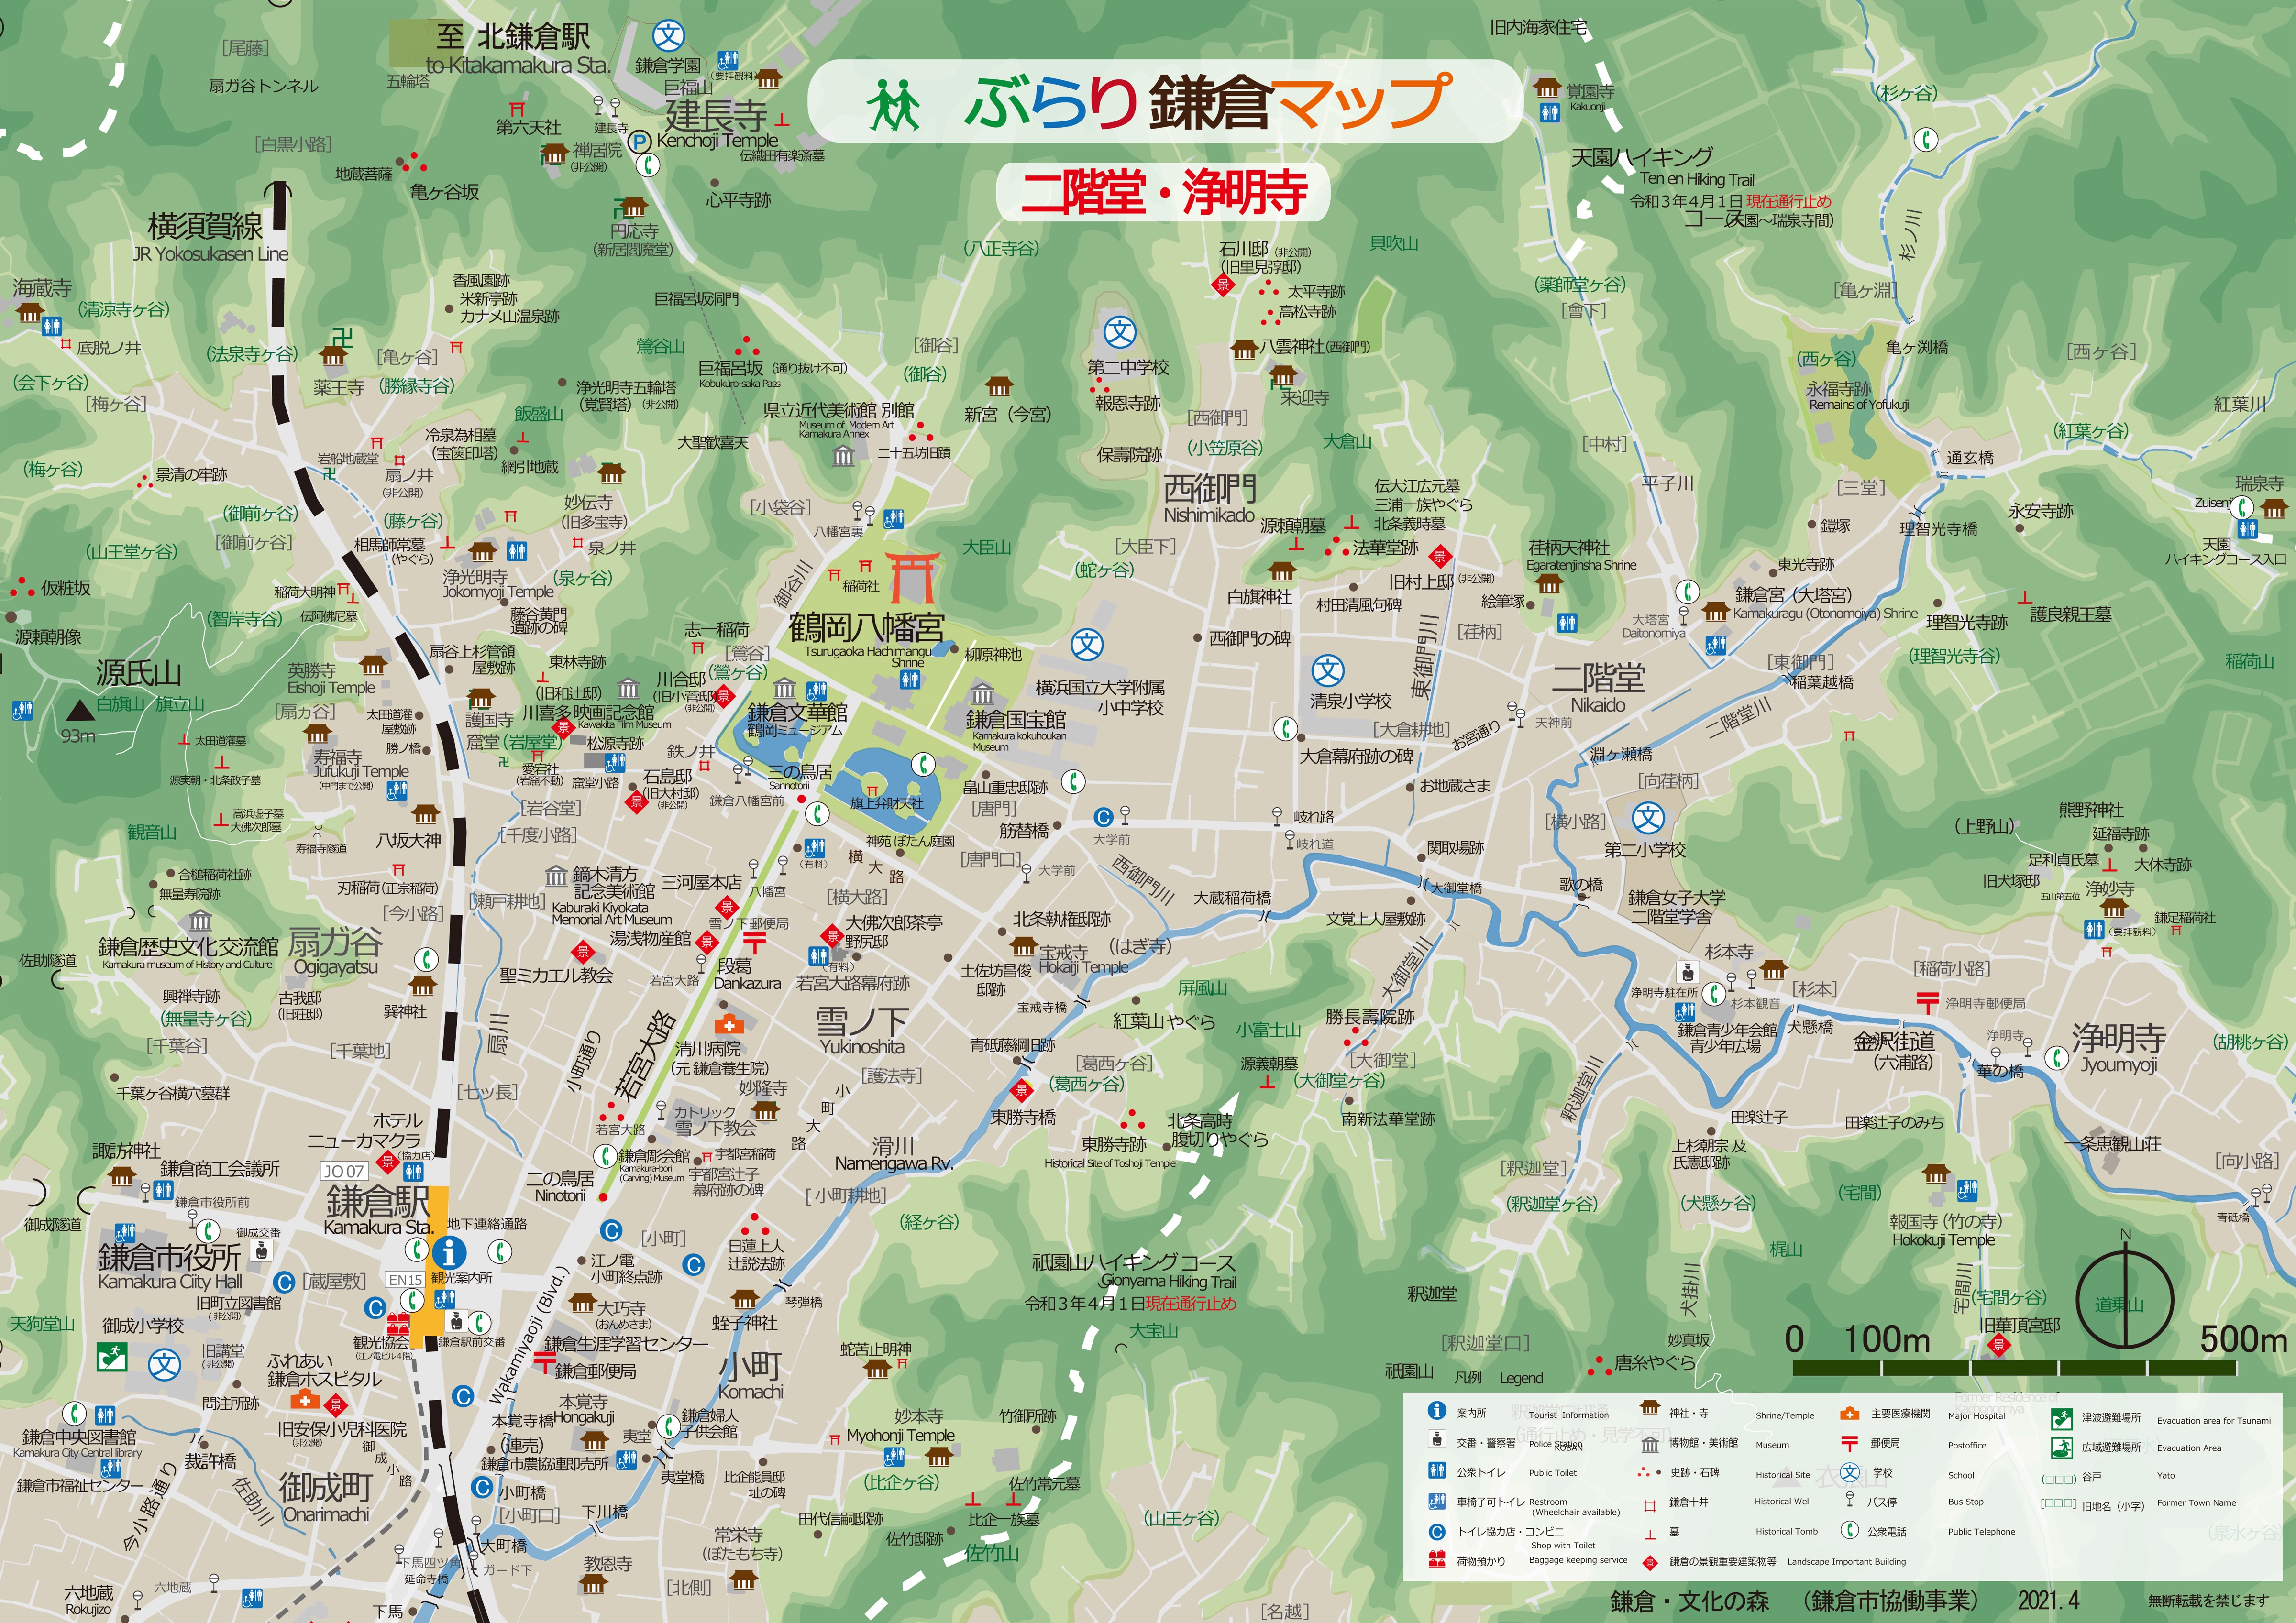 鎌倉観光のおともに 観光パンフレット 資料をどうぞ 鎌倉市観光協会 時を楽しむ 旅がある 鎌倉観光公式ガイド